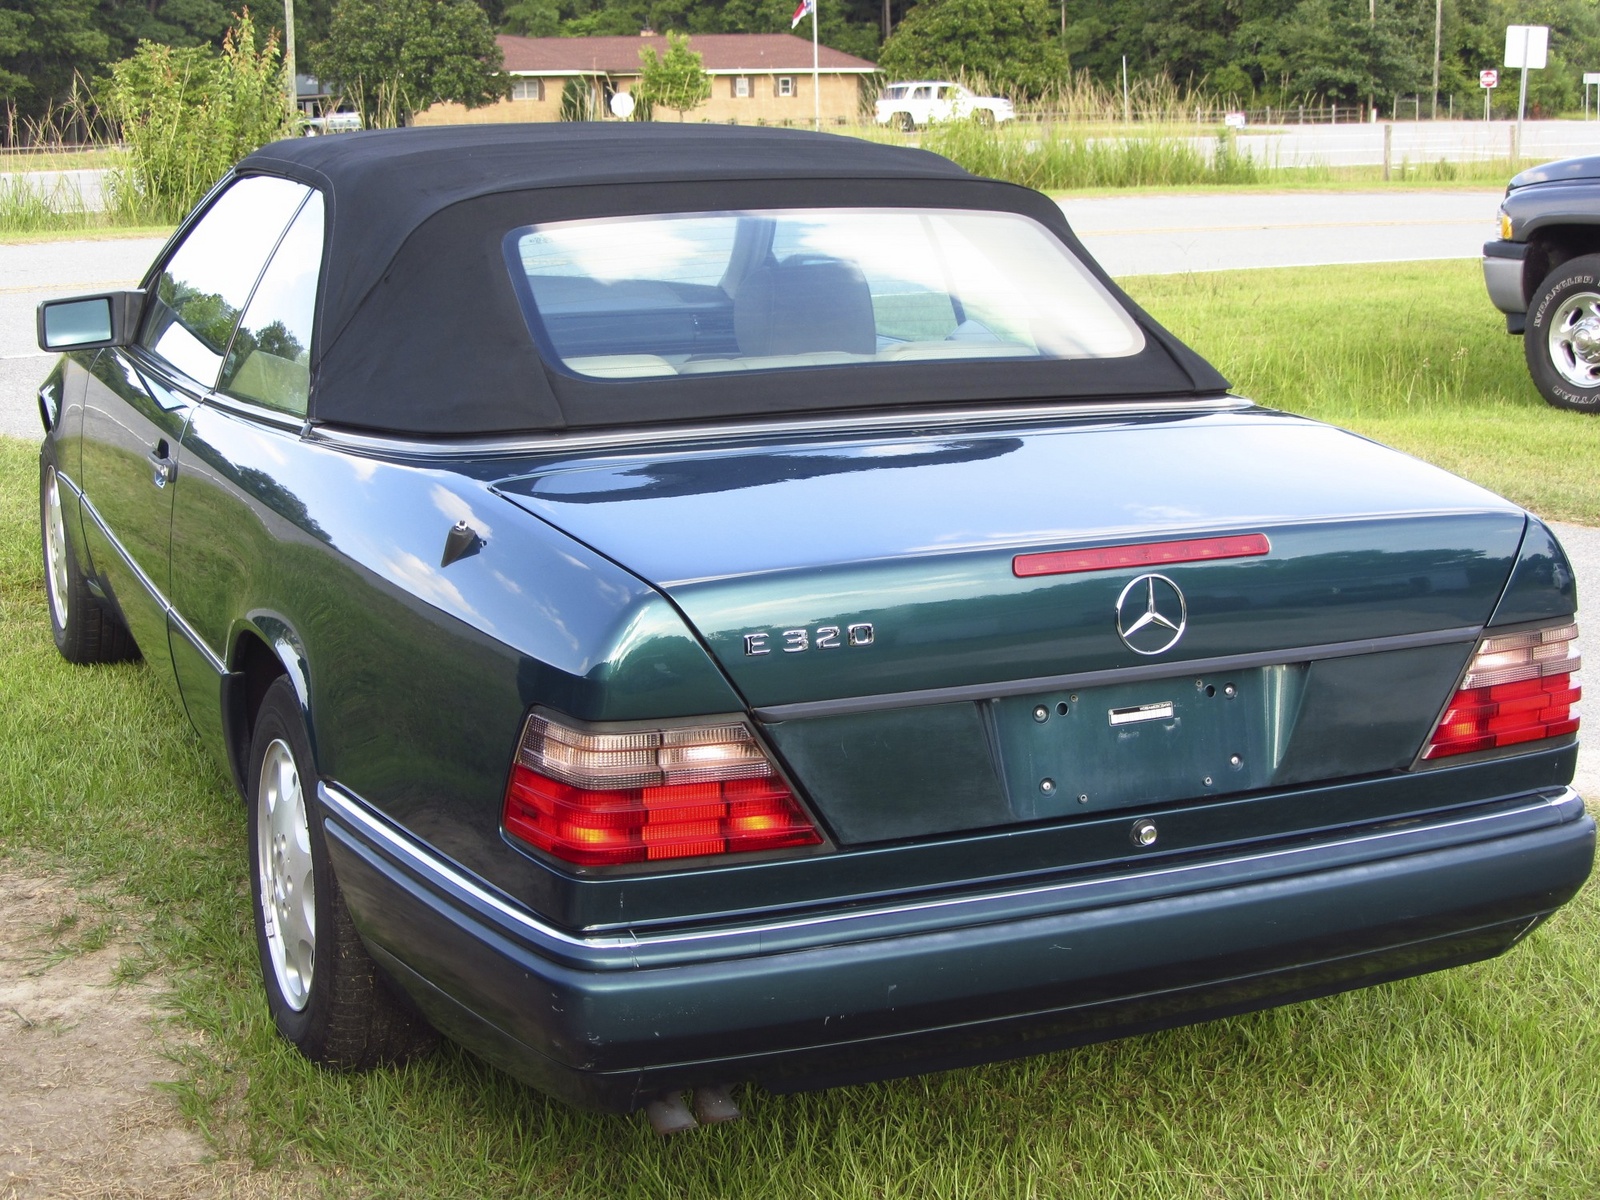 1995 Mercedes e320 convertible review #2